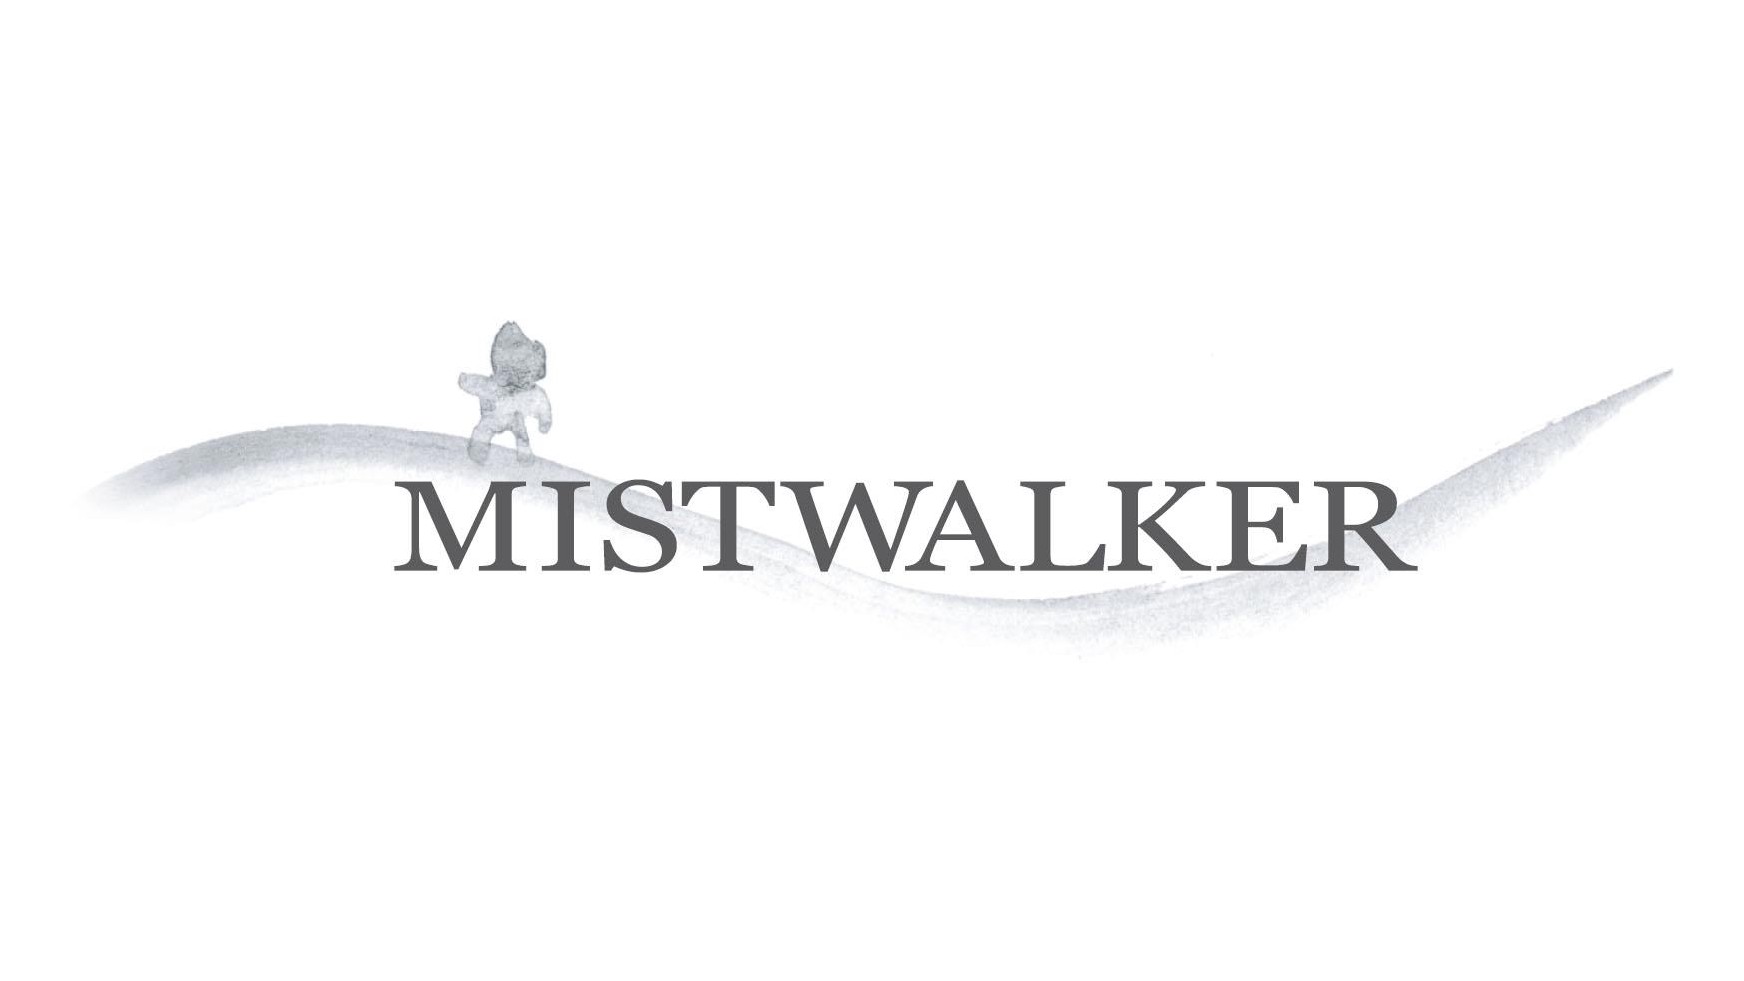 Mistwalker e Silicon Studio insieme per un nuovo progetto